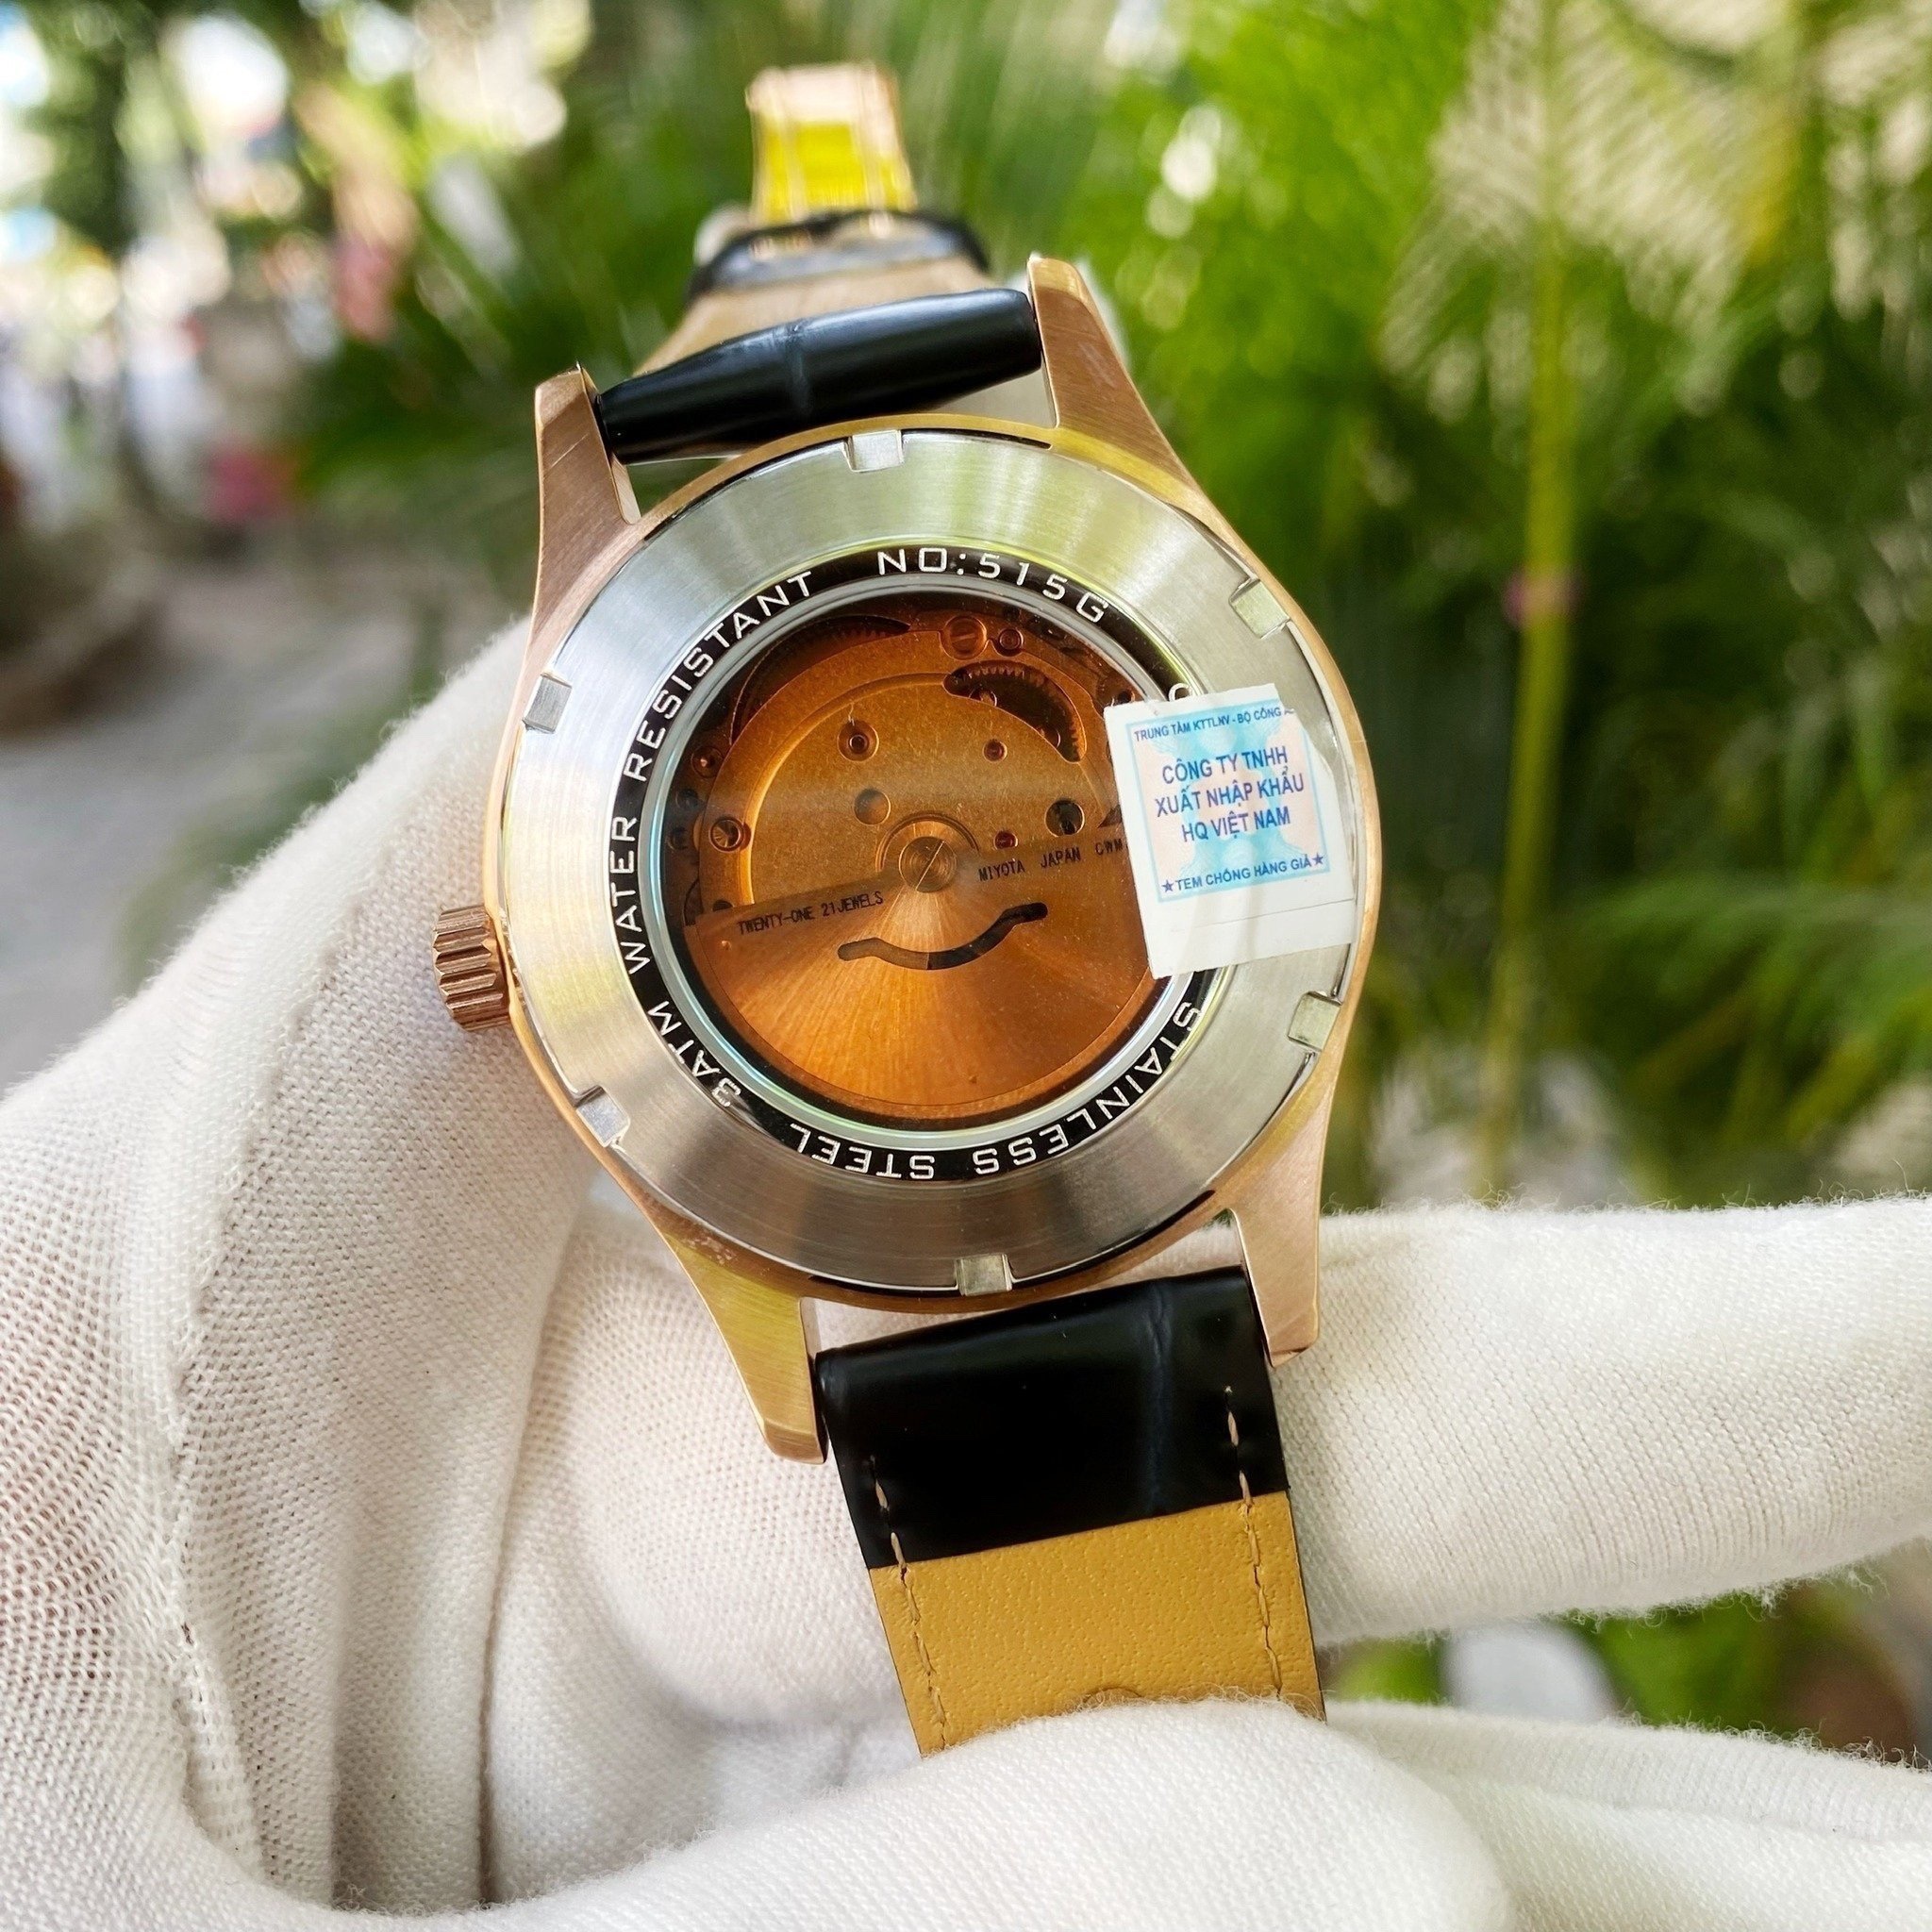 Đồng Hồ Carnival Song Mã Limited Gen 2 CNV515G3 - Đánh dấu sự tiến bộ vượt bậc trong ngành công nghiệp đồng hồ